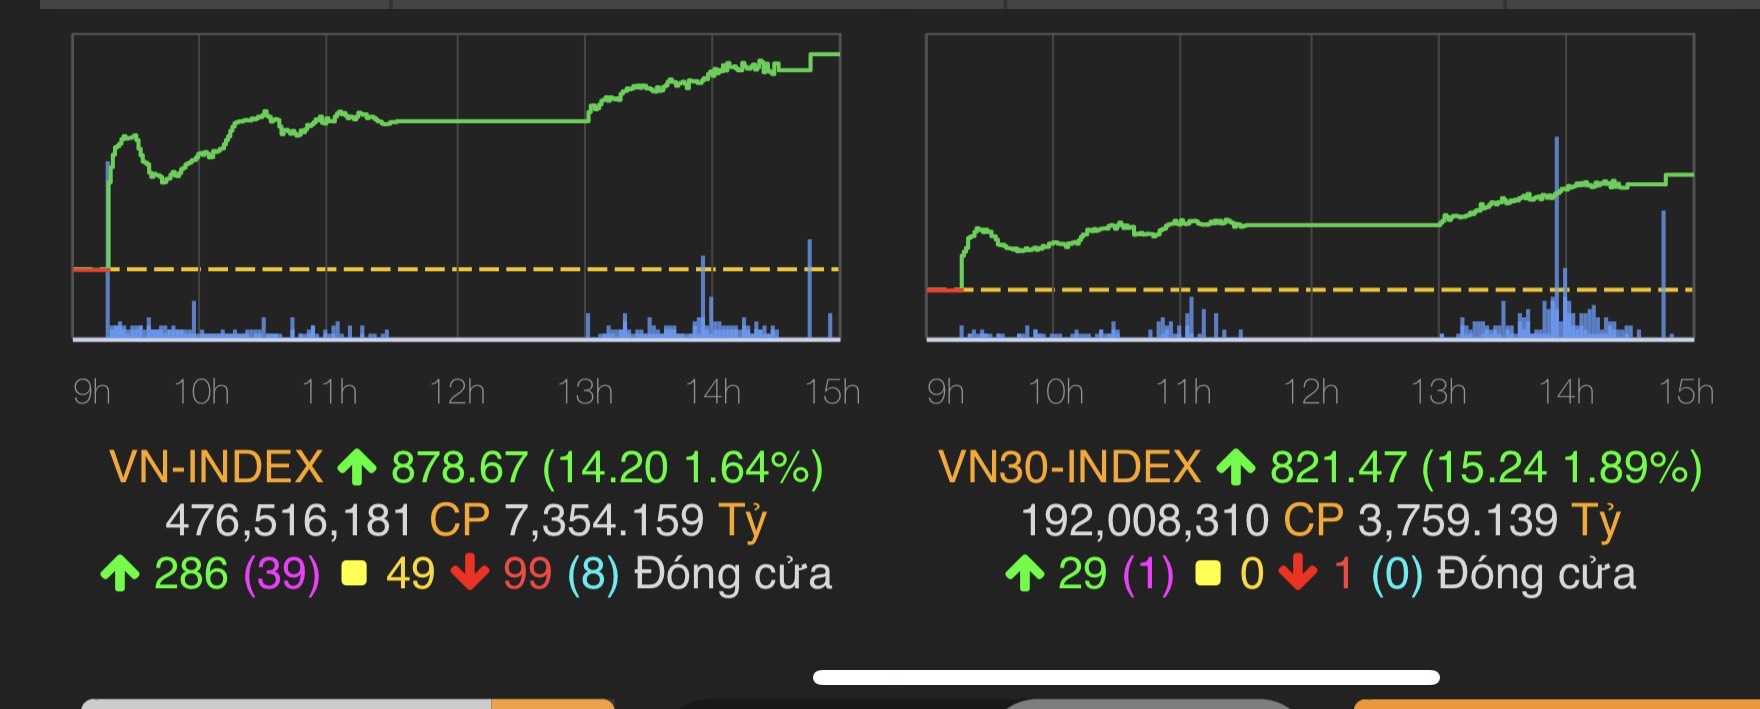 VN-Index tăng 14,2 điểm (1,64%) lên 878,67 điểm.